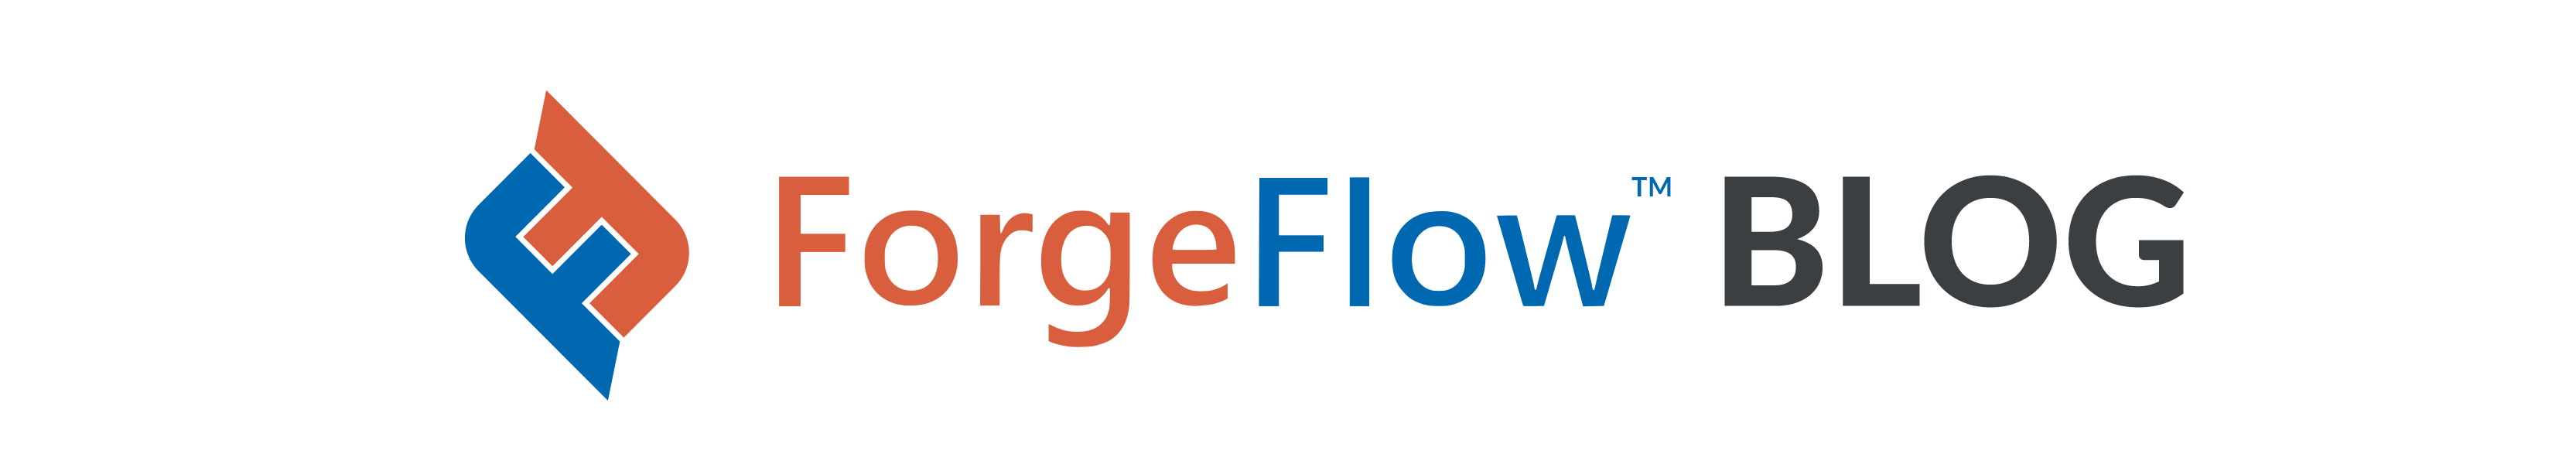 forgeflow blog header